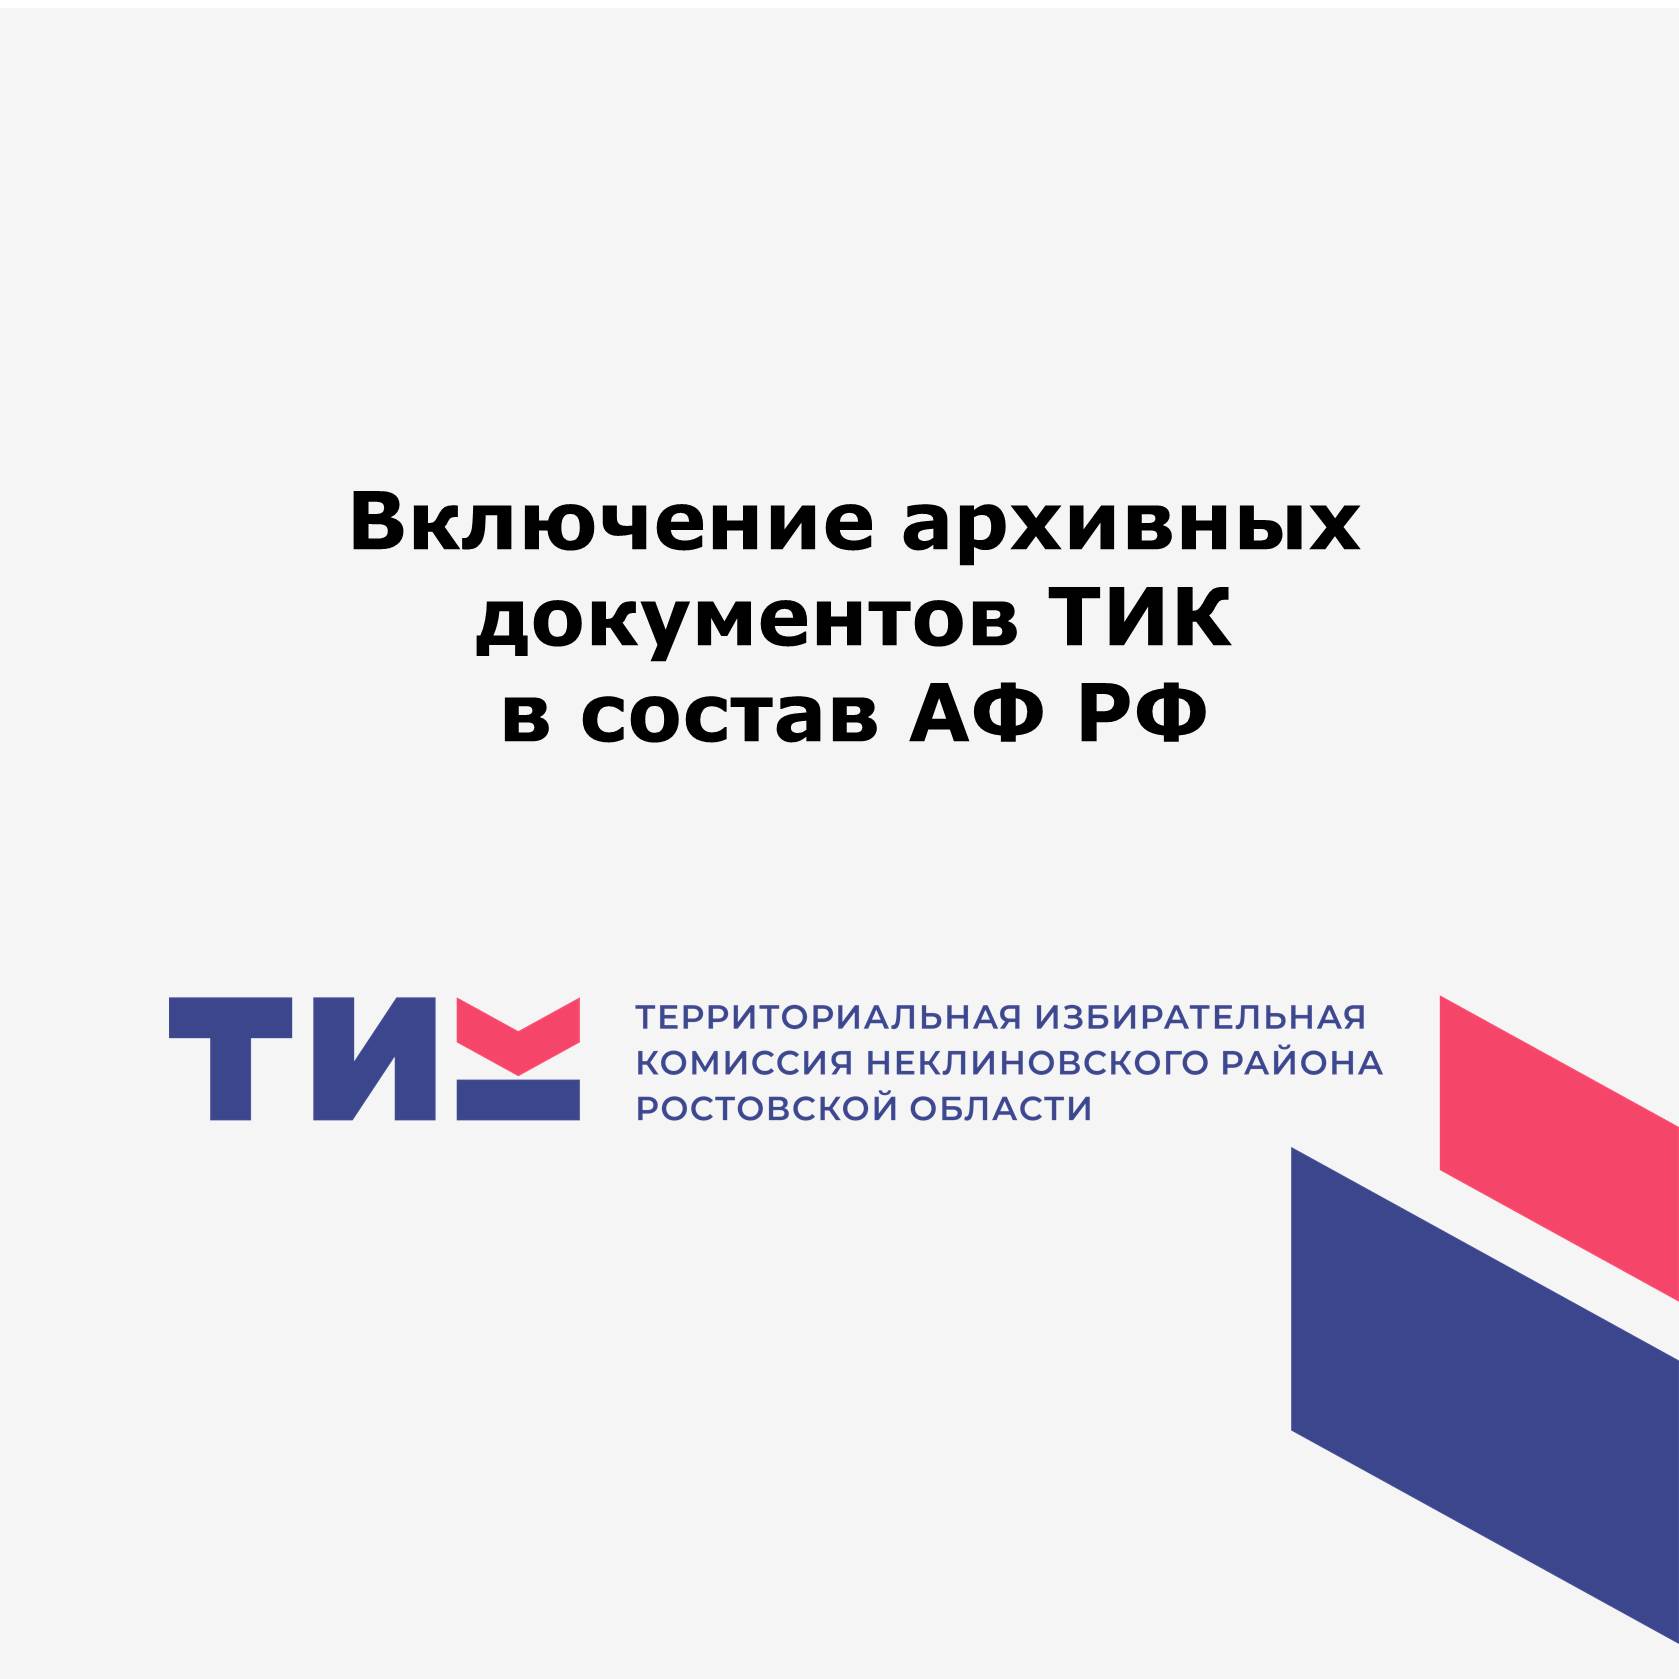 Включение архивных документов ТИК в состав АФ РФ